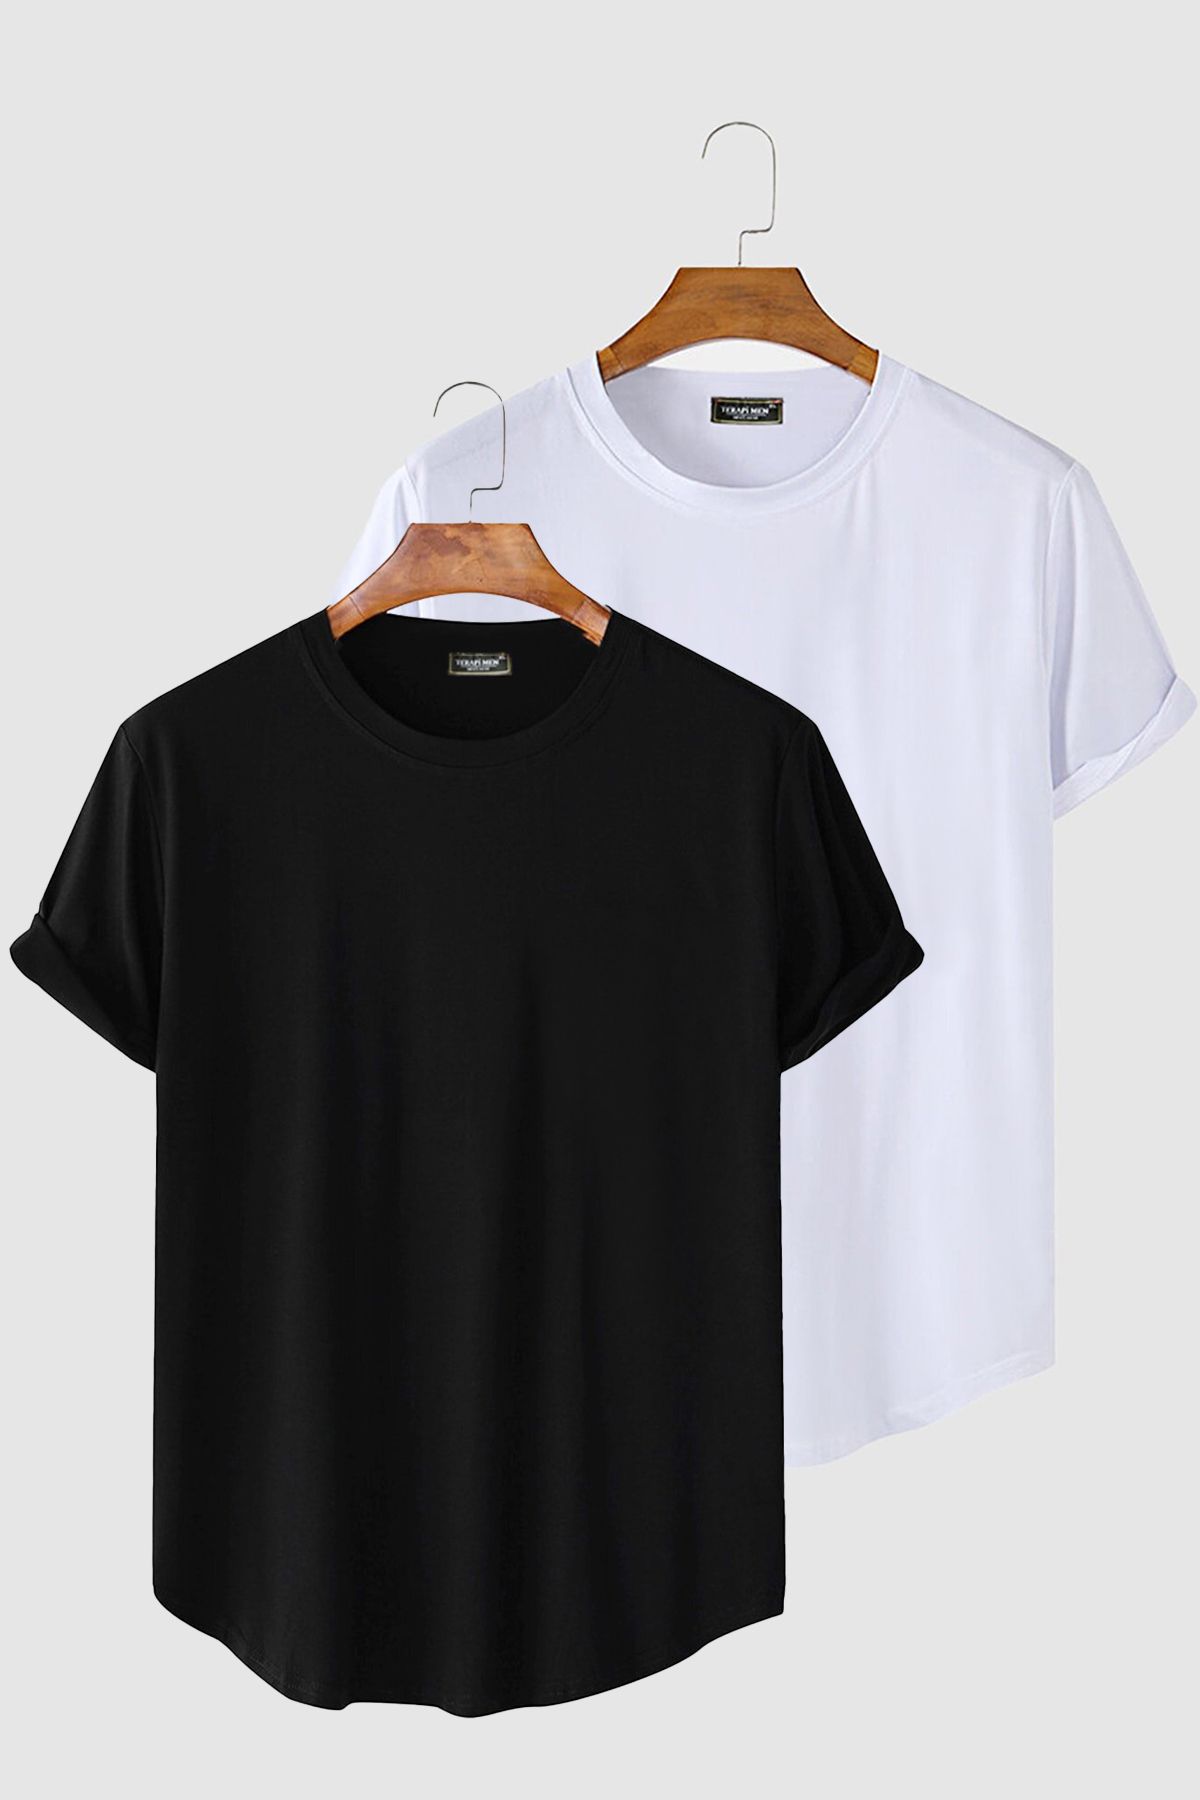 VEAVEN 2'li Erkek Siyah-Beyaz Kolları Katlı Oval Kesim Cepsiz Bisiklet Yaka T-shirt